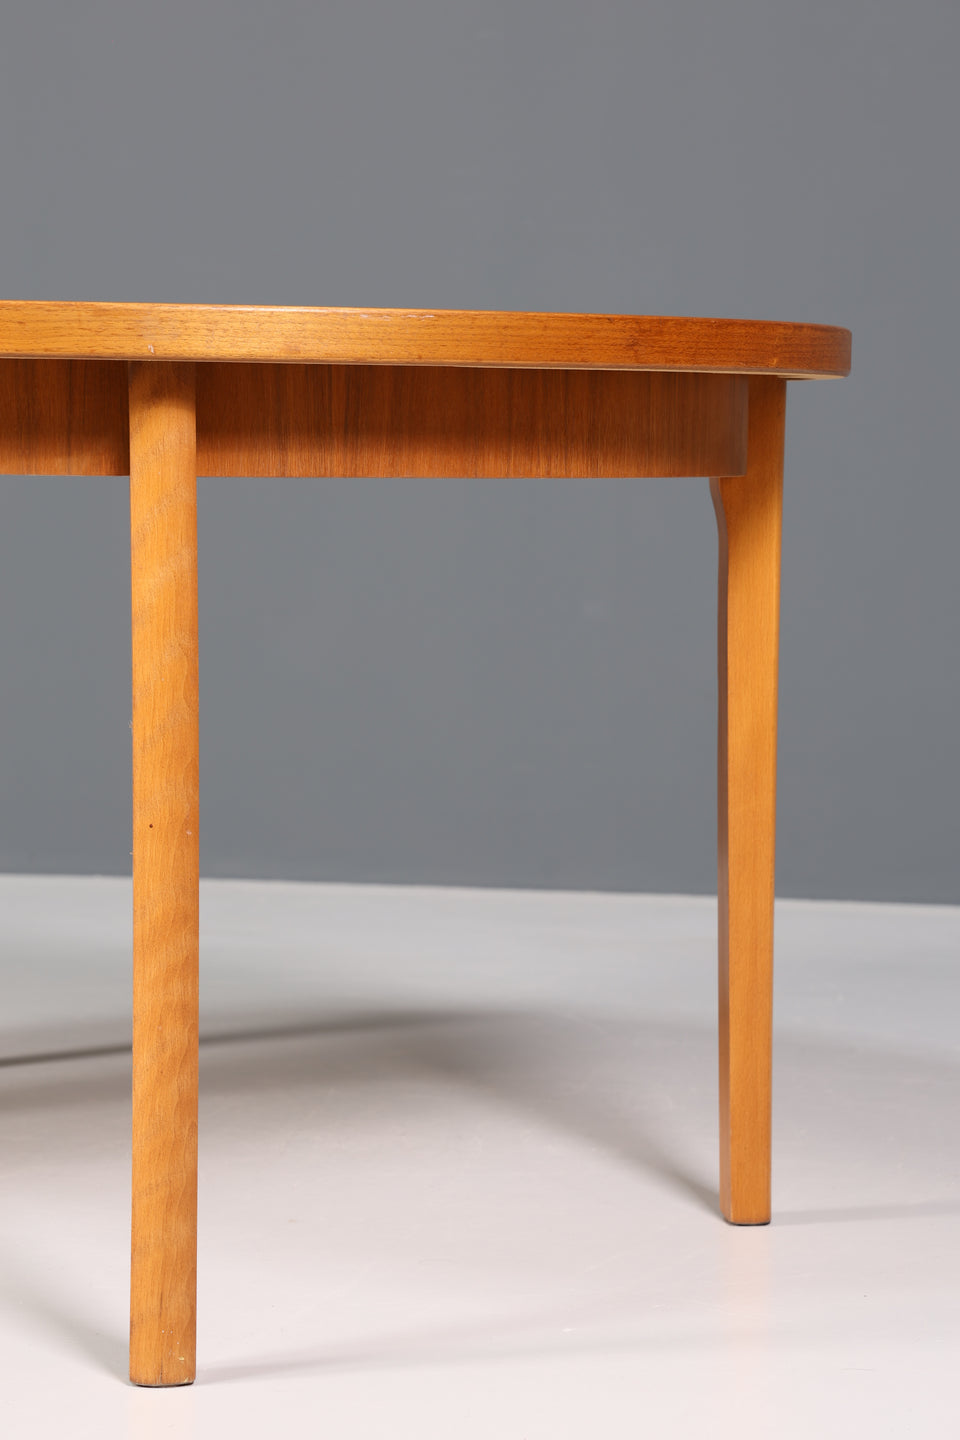 Wunderschöner Mid Century Esstisch "Made in Sweden" ausziehbarer Tisch echt Holz Küchentisch